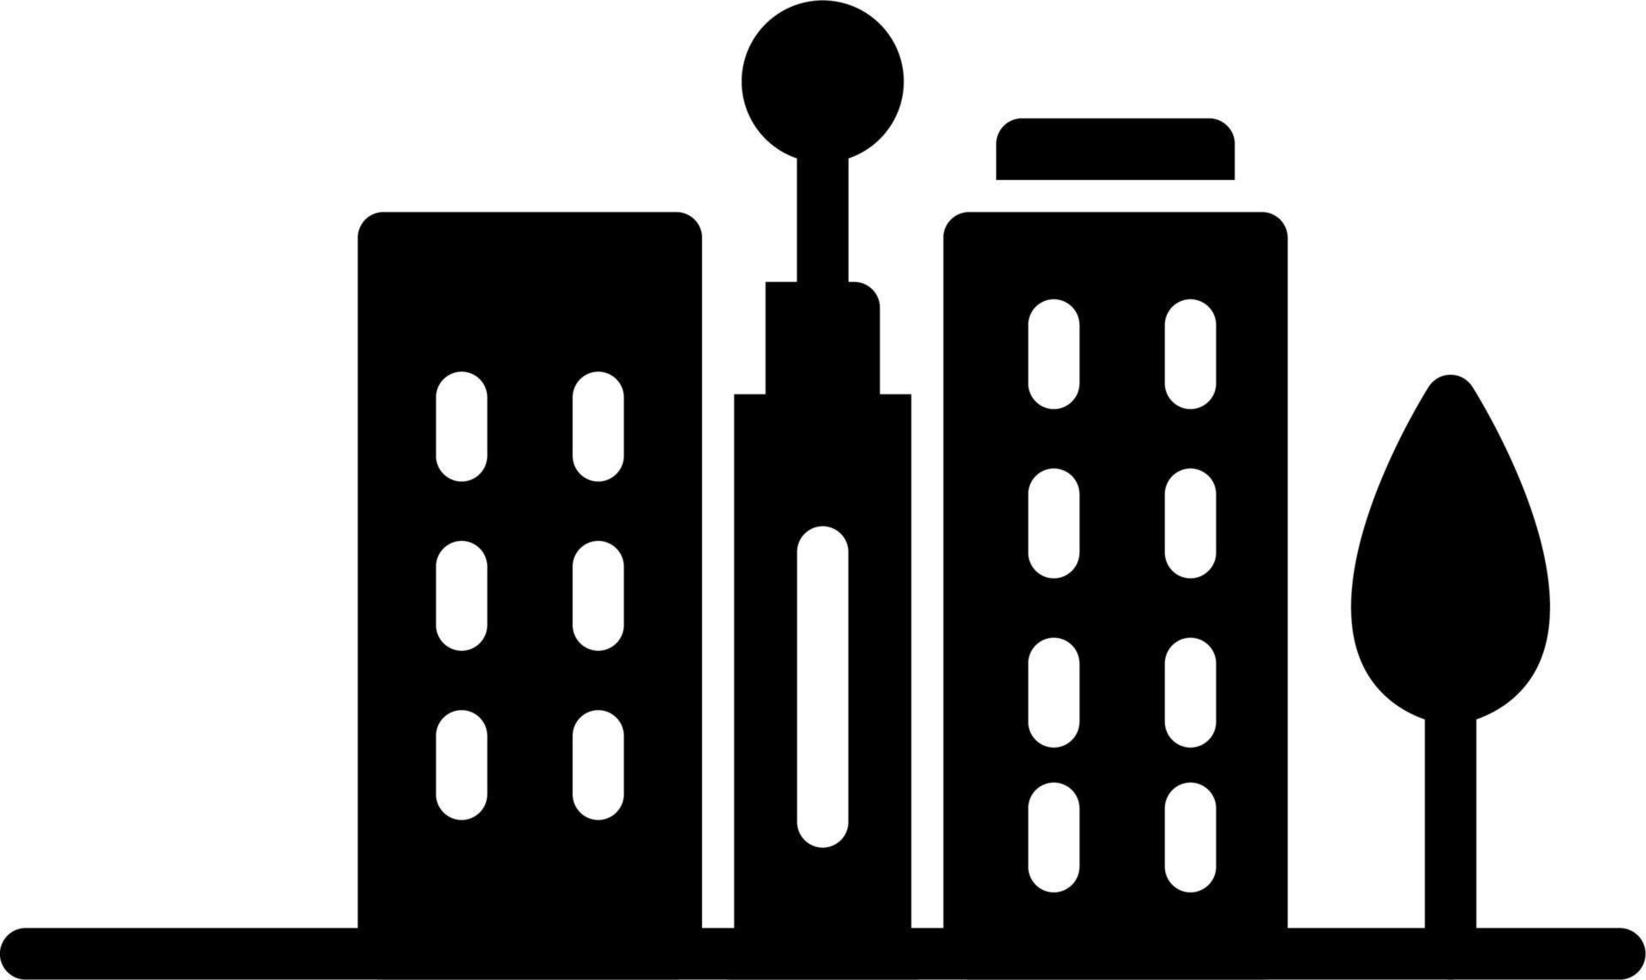 City Vector Icon